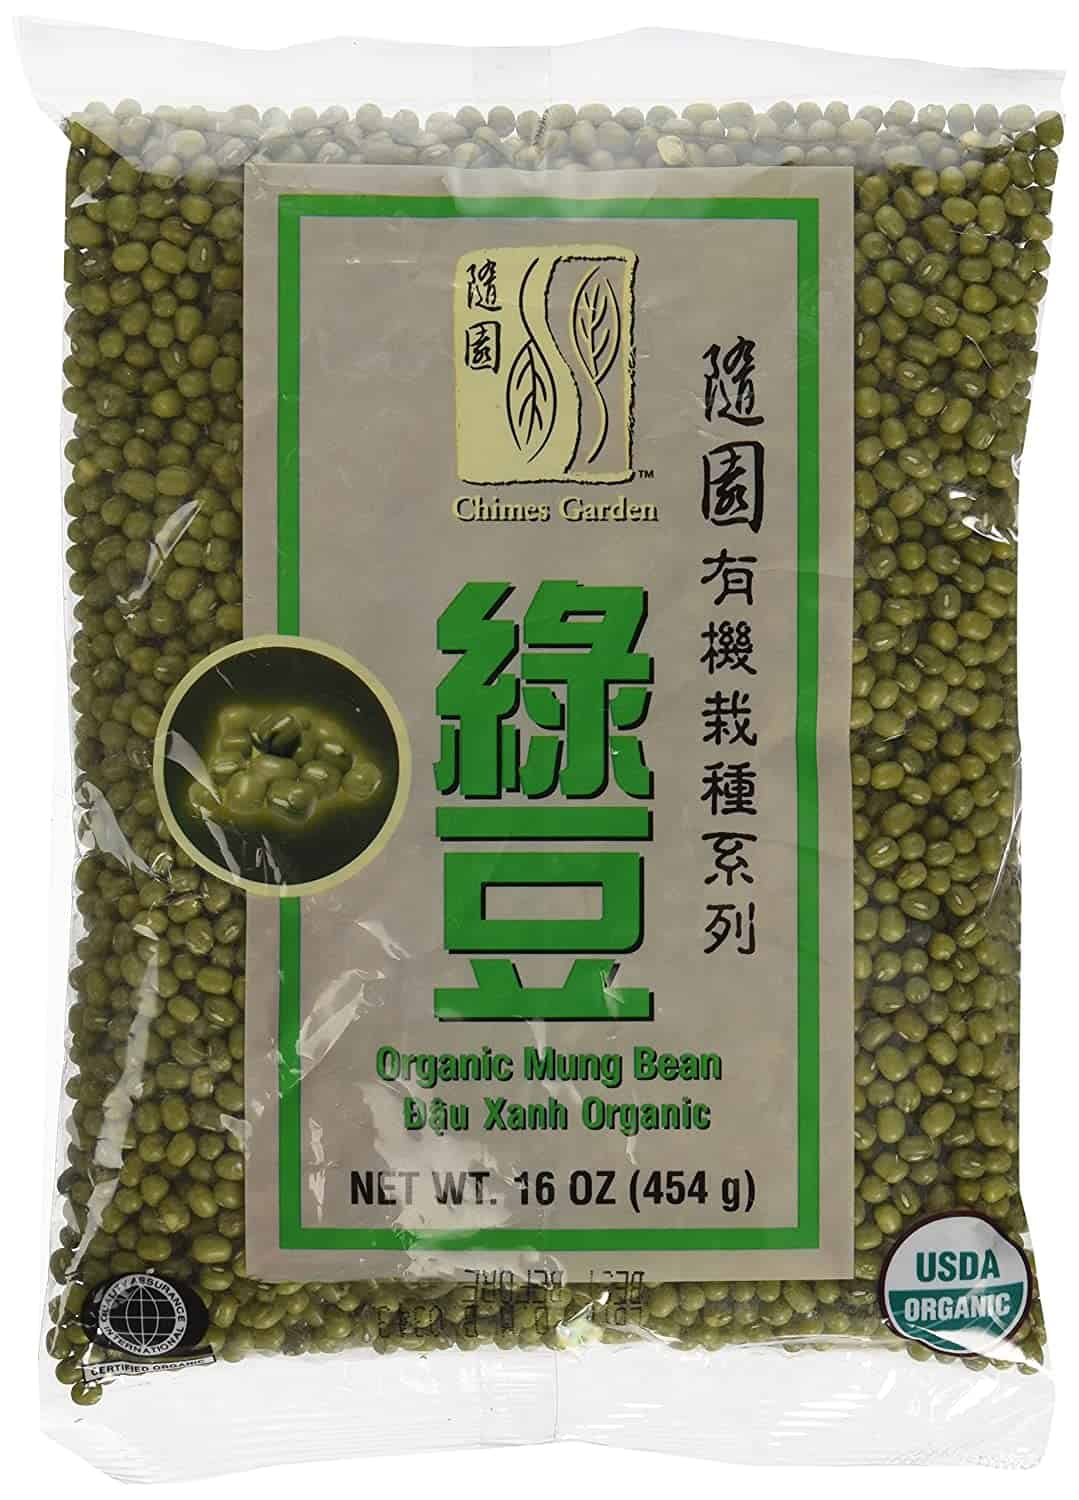 Best overall mung beans: Chimes Garden Organic Mung Beans